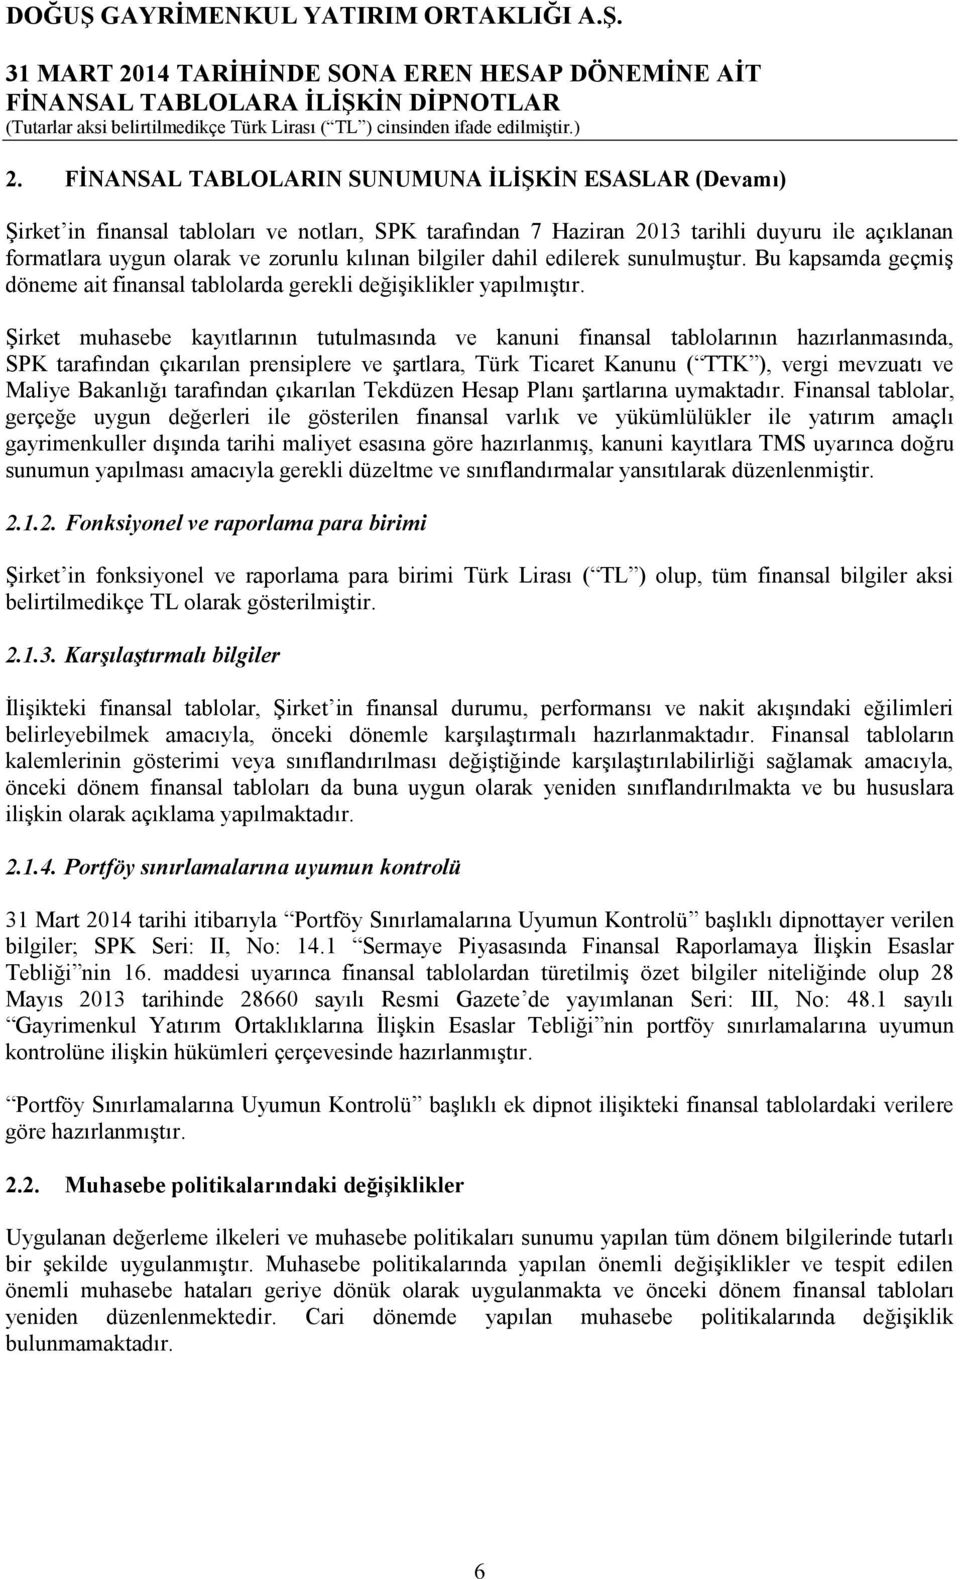 Şirket muhasebe kayıtlarının tutulmasında ve kanuni finansal tablolarının hazırlanmasında, SPK tarafından çıkarılan prensiplere ve şartlara, Türk Ticaret Kanunu ( TTK ), vergi mevzuatı ve Maliye